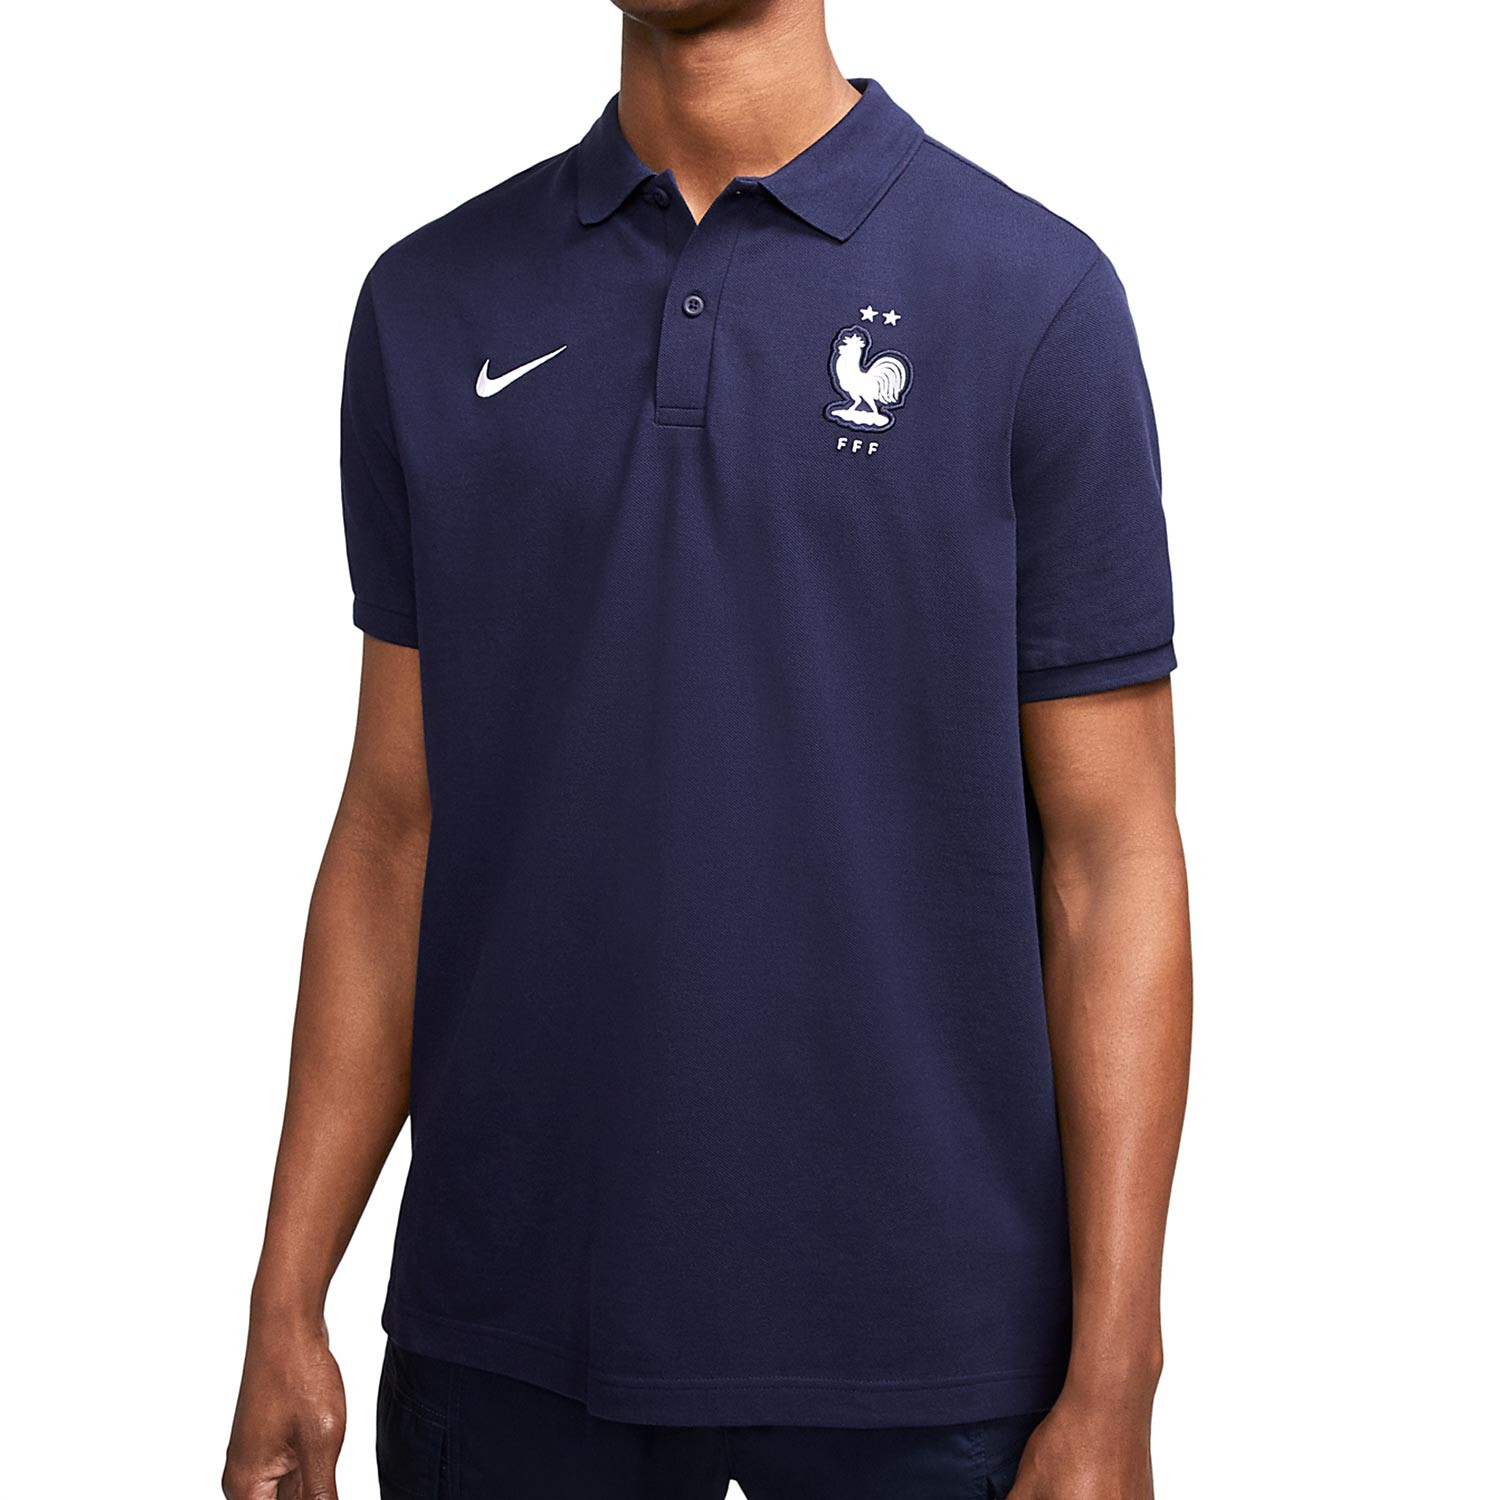 Polo Nike Francia Crew marino futbolmania